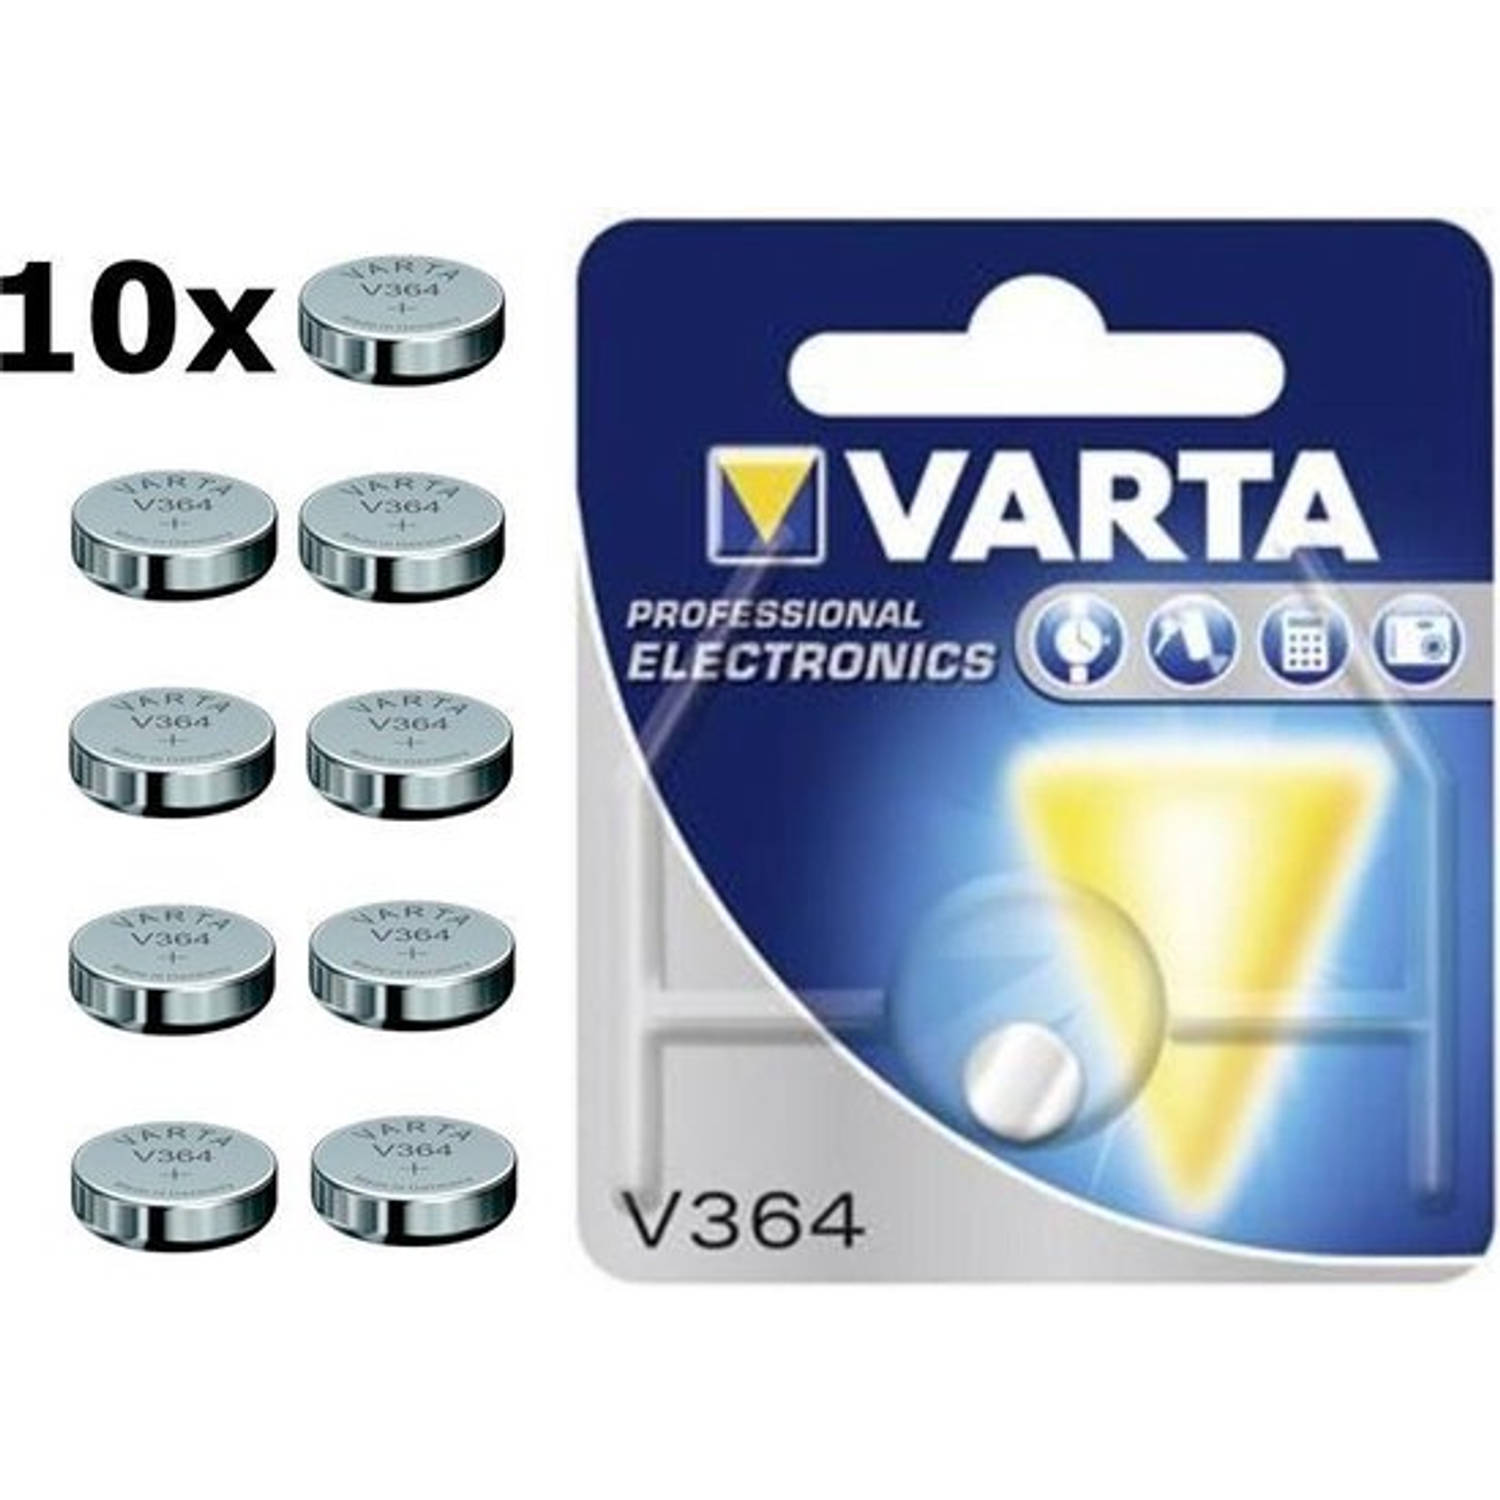 10 Stuks - Varta V364 20mAh 1.55V knoopcel batterij